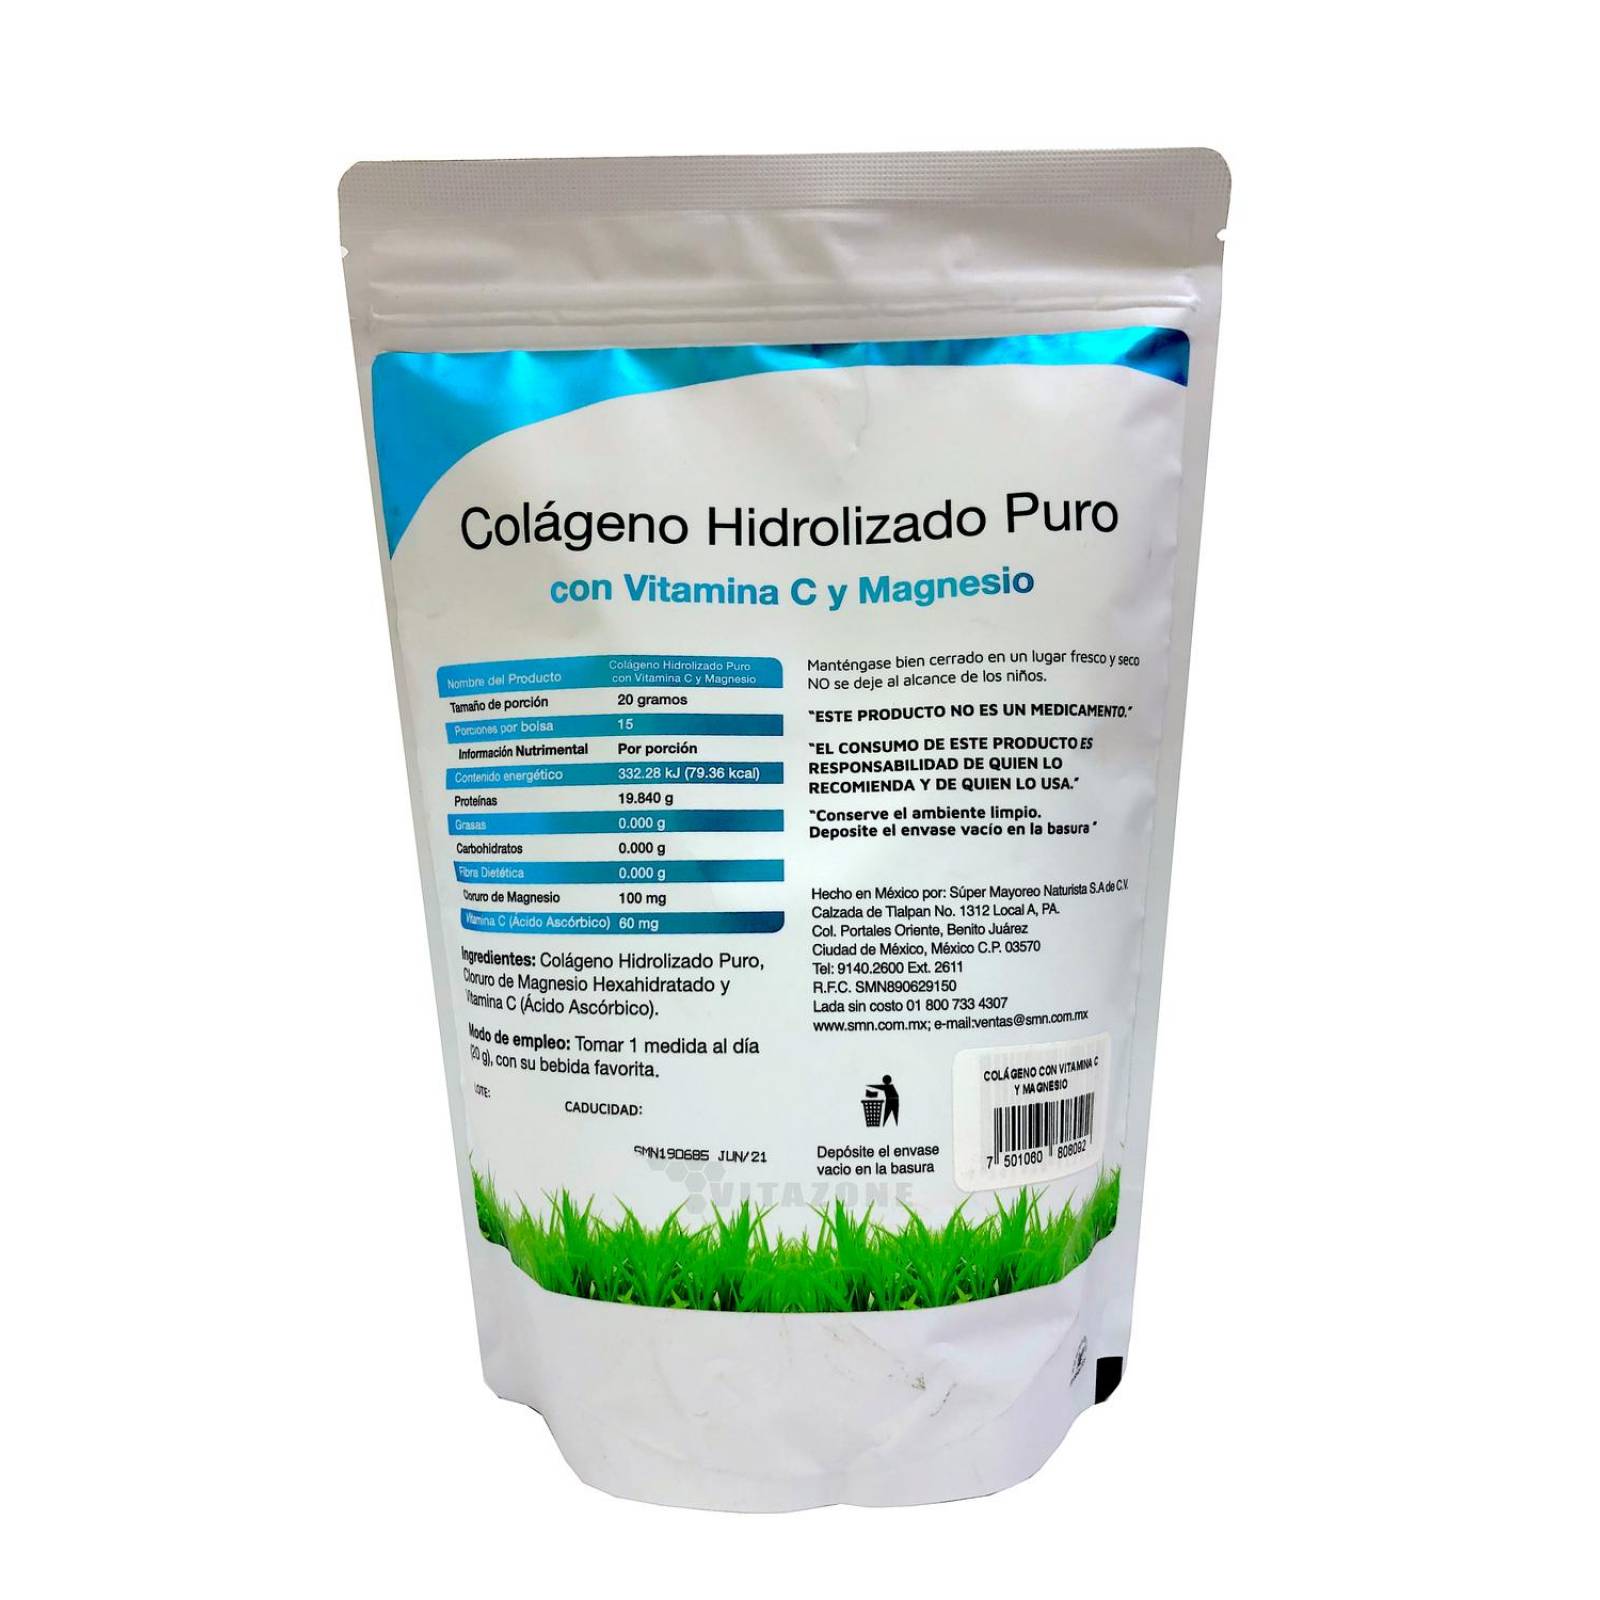 Colágeno Hidrolizado Puro Biotina Magnesio Matcha 3 pzs Vidanat 